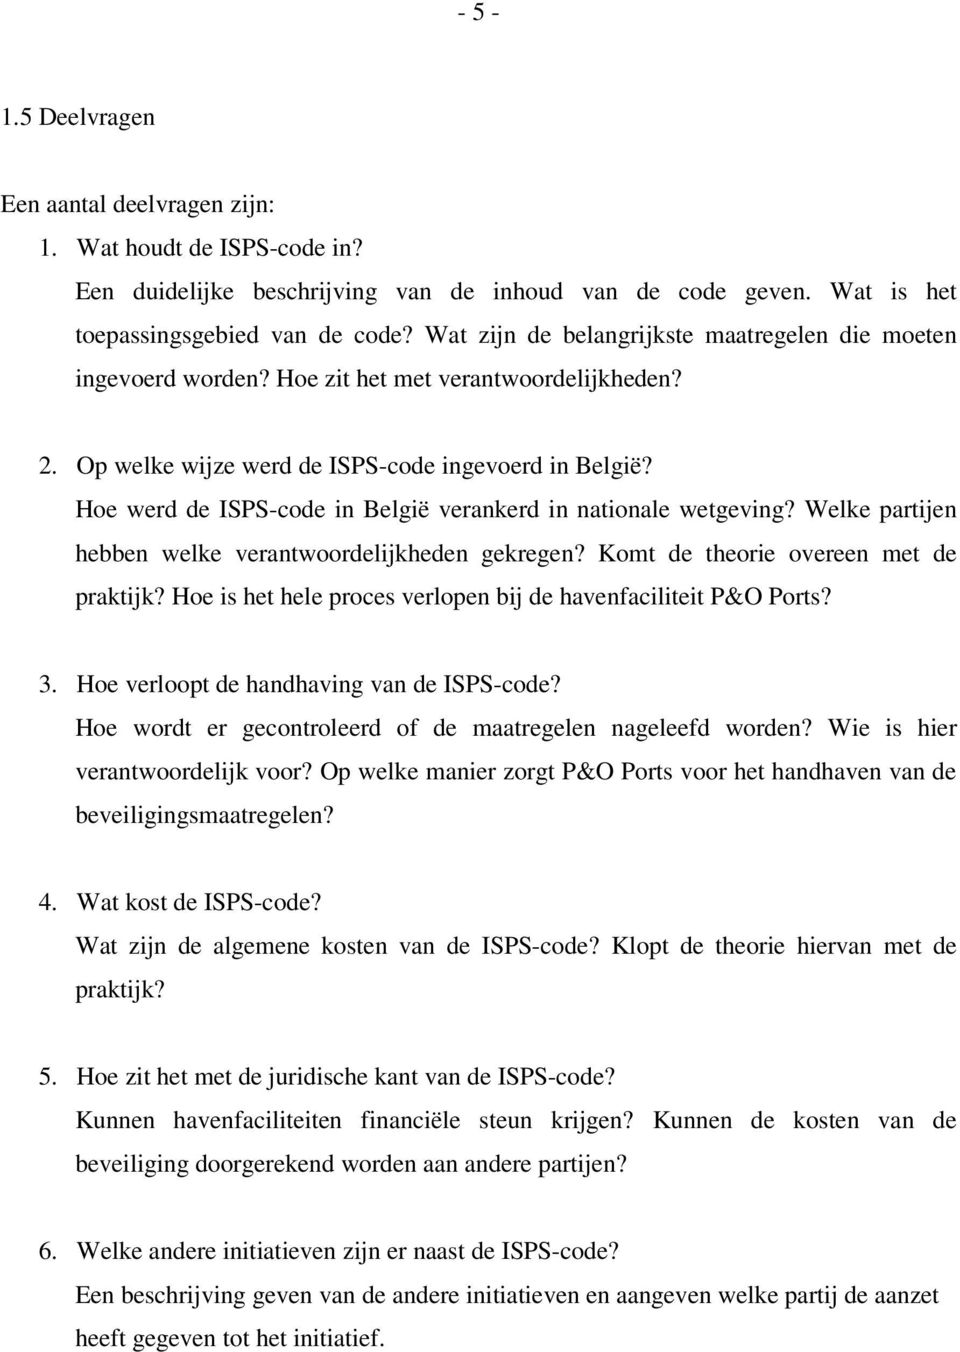 Hoe werd de ISPS-code in België verankerd in nationale wetgeving? Welke partijen hebben welke verantwoordelijkheden gekregen? Komt de theorie overeen met de praktijk?